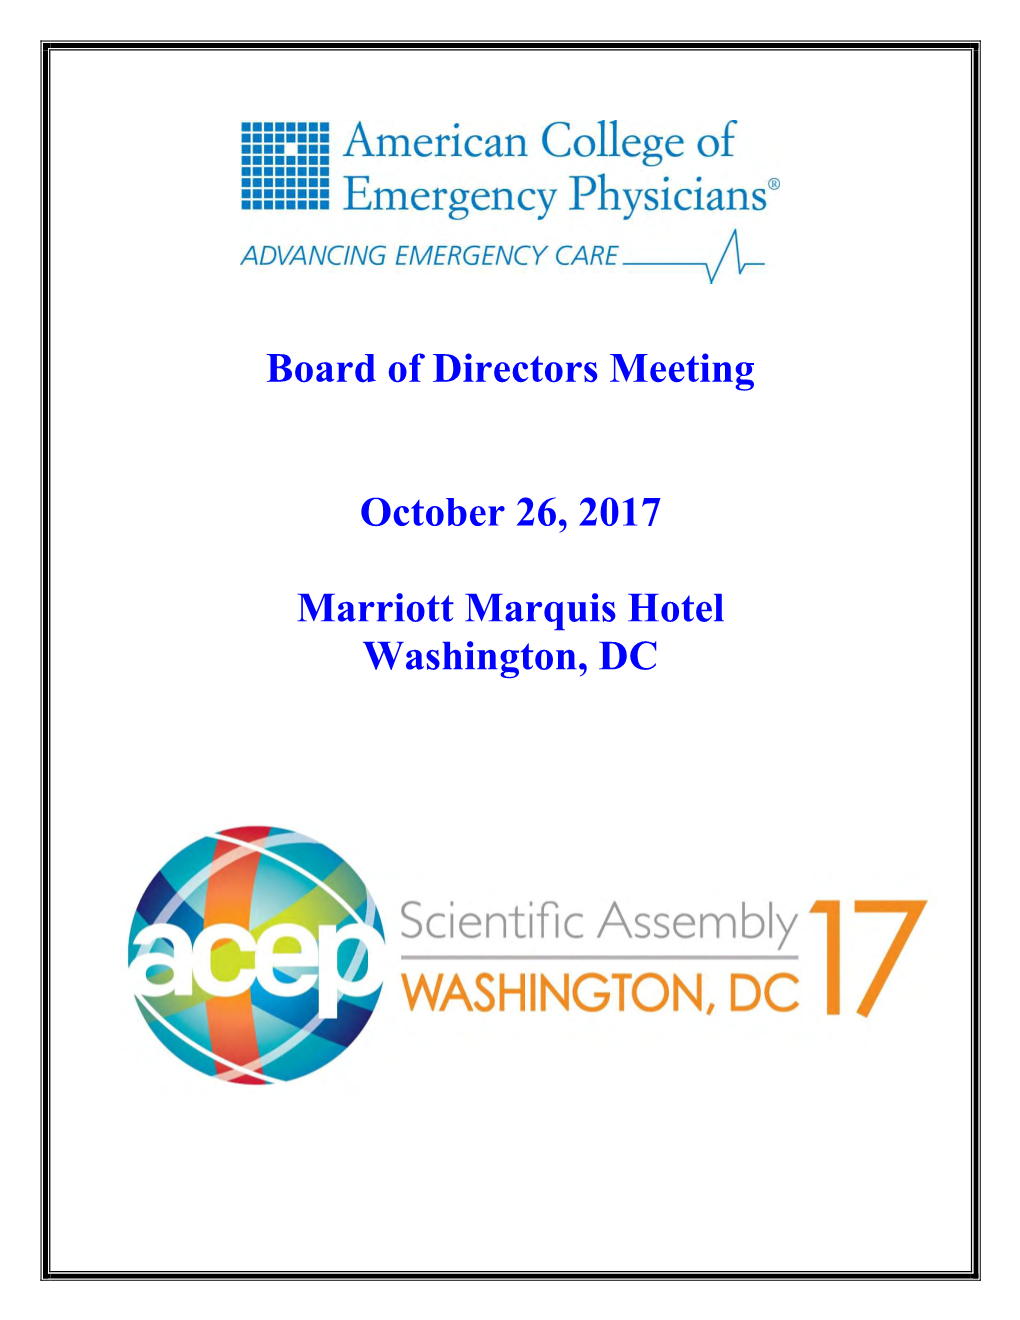 Board of Directors Meeting October 26, 2017 Marriott Marquis Hotel